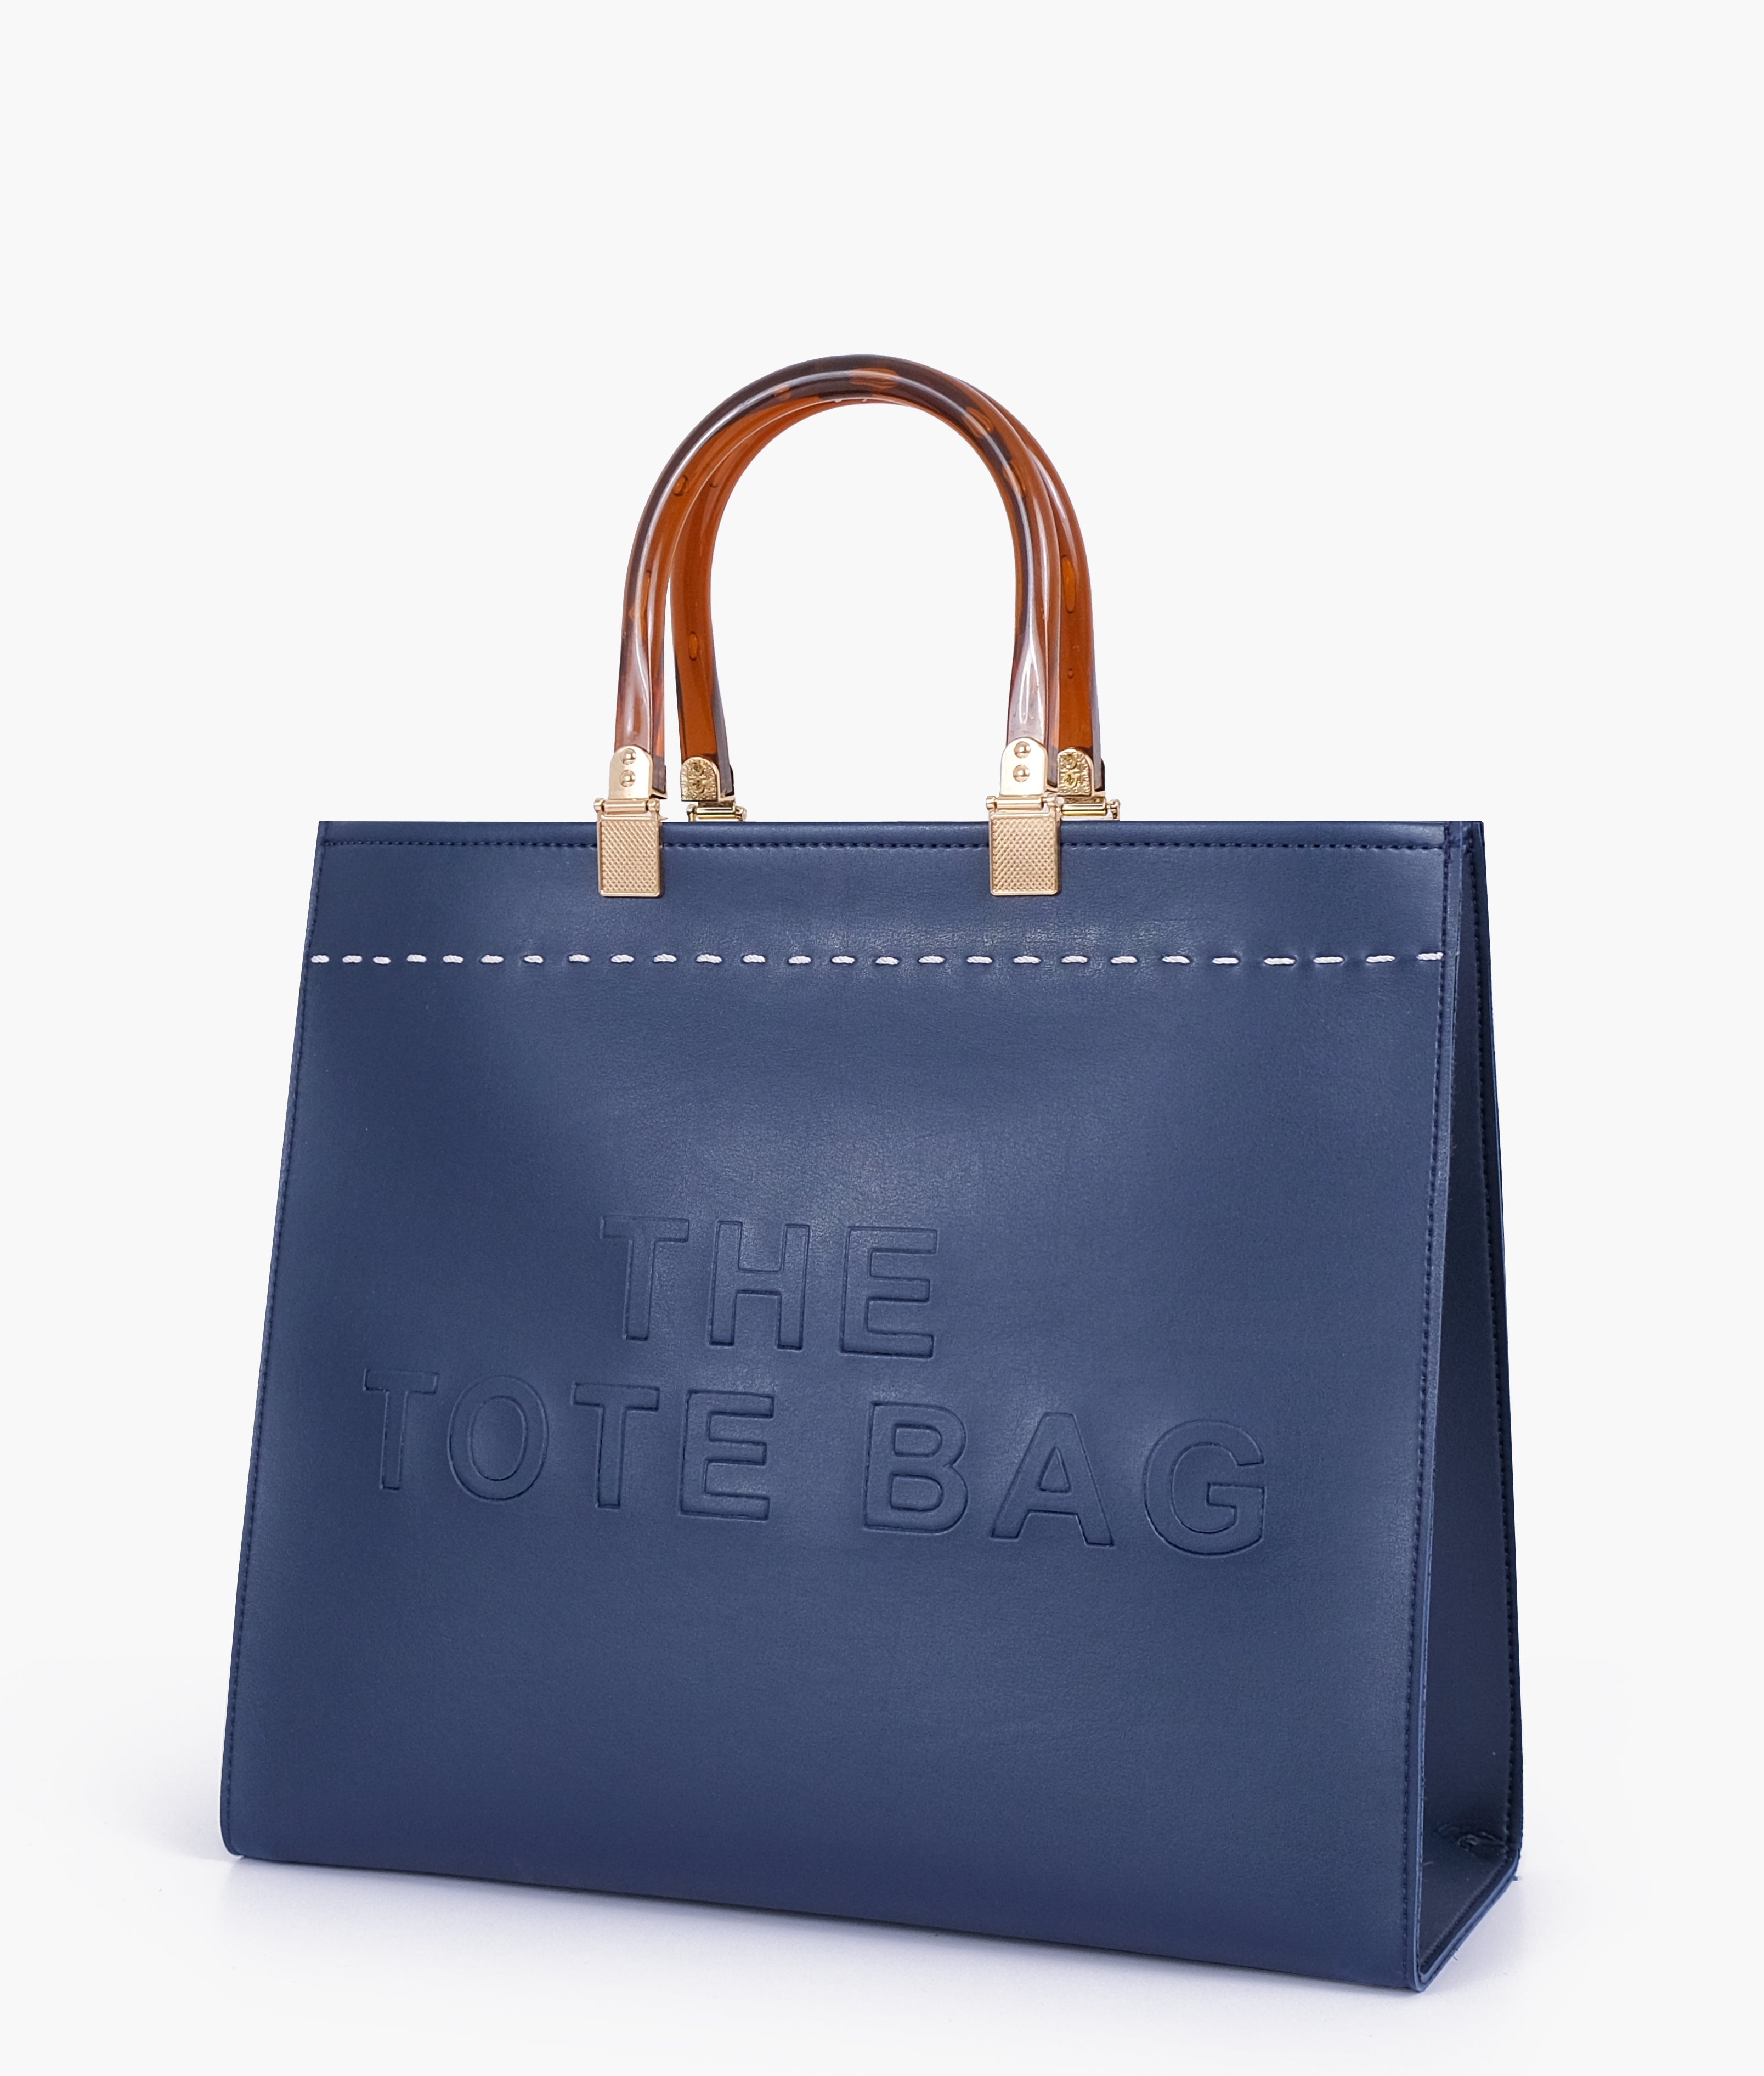 Blue signature tote bag